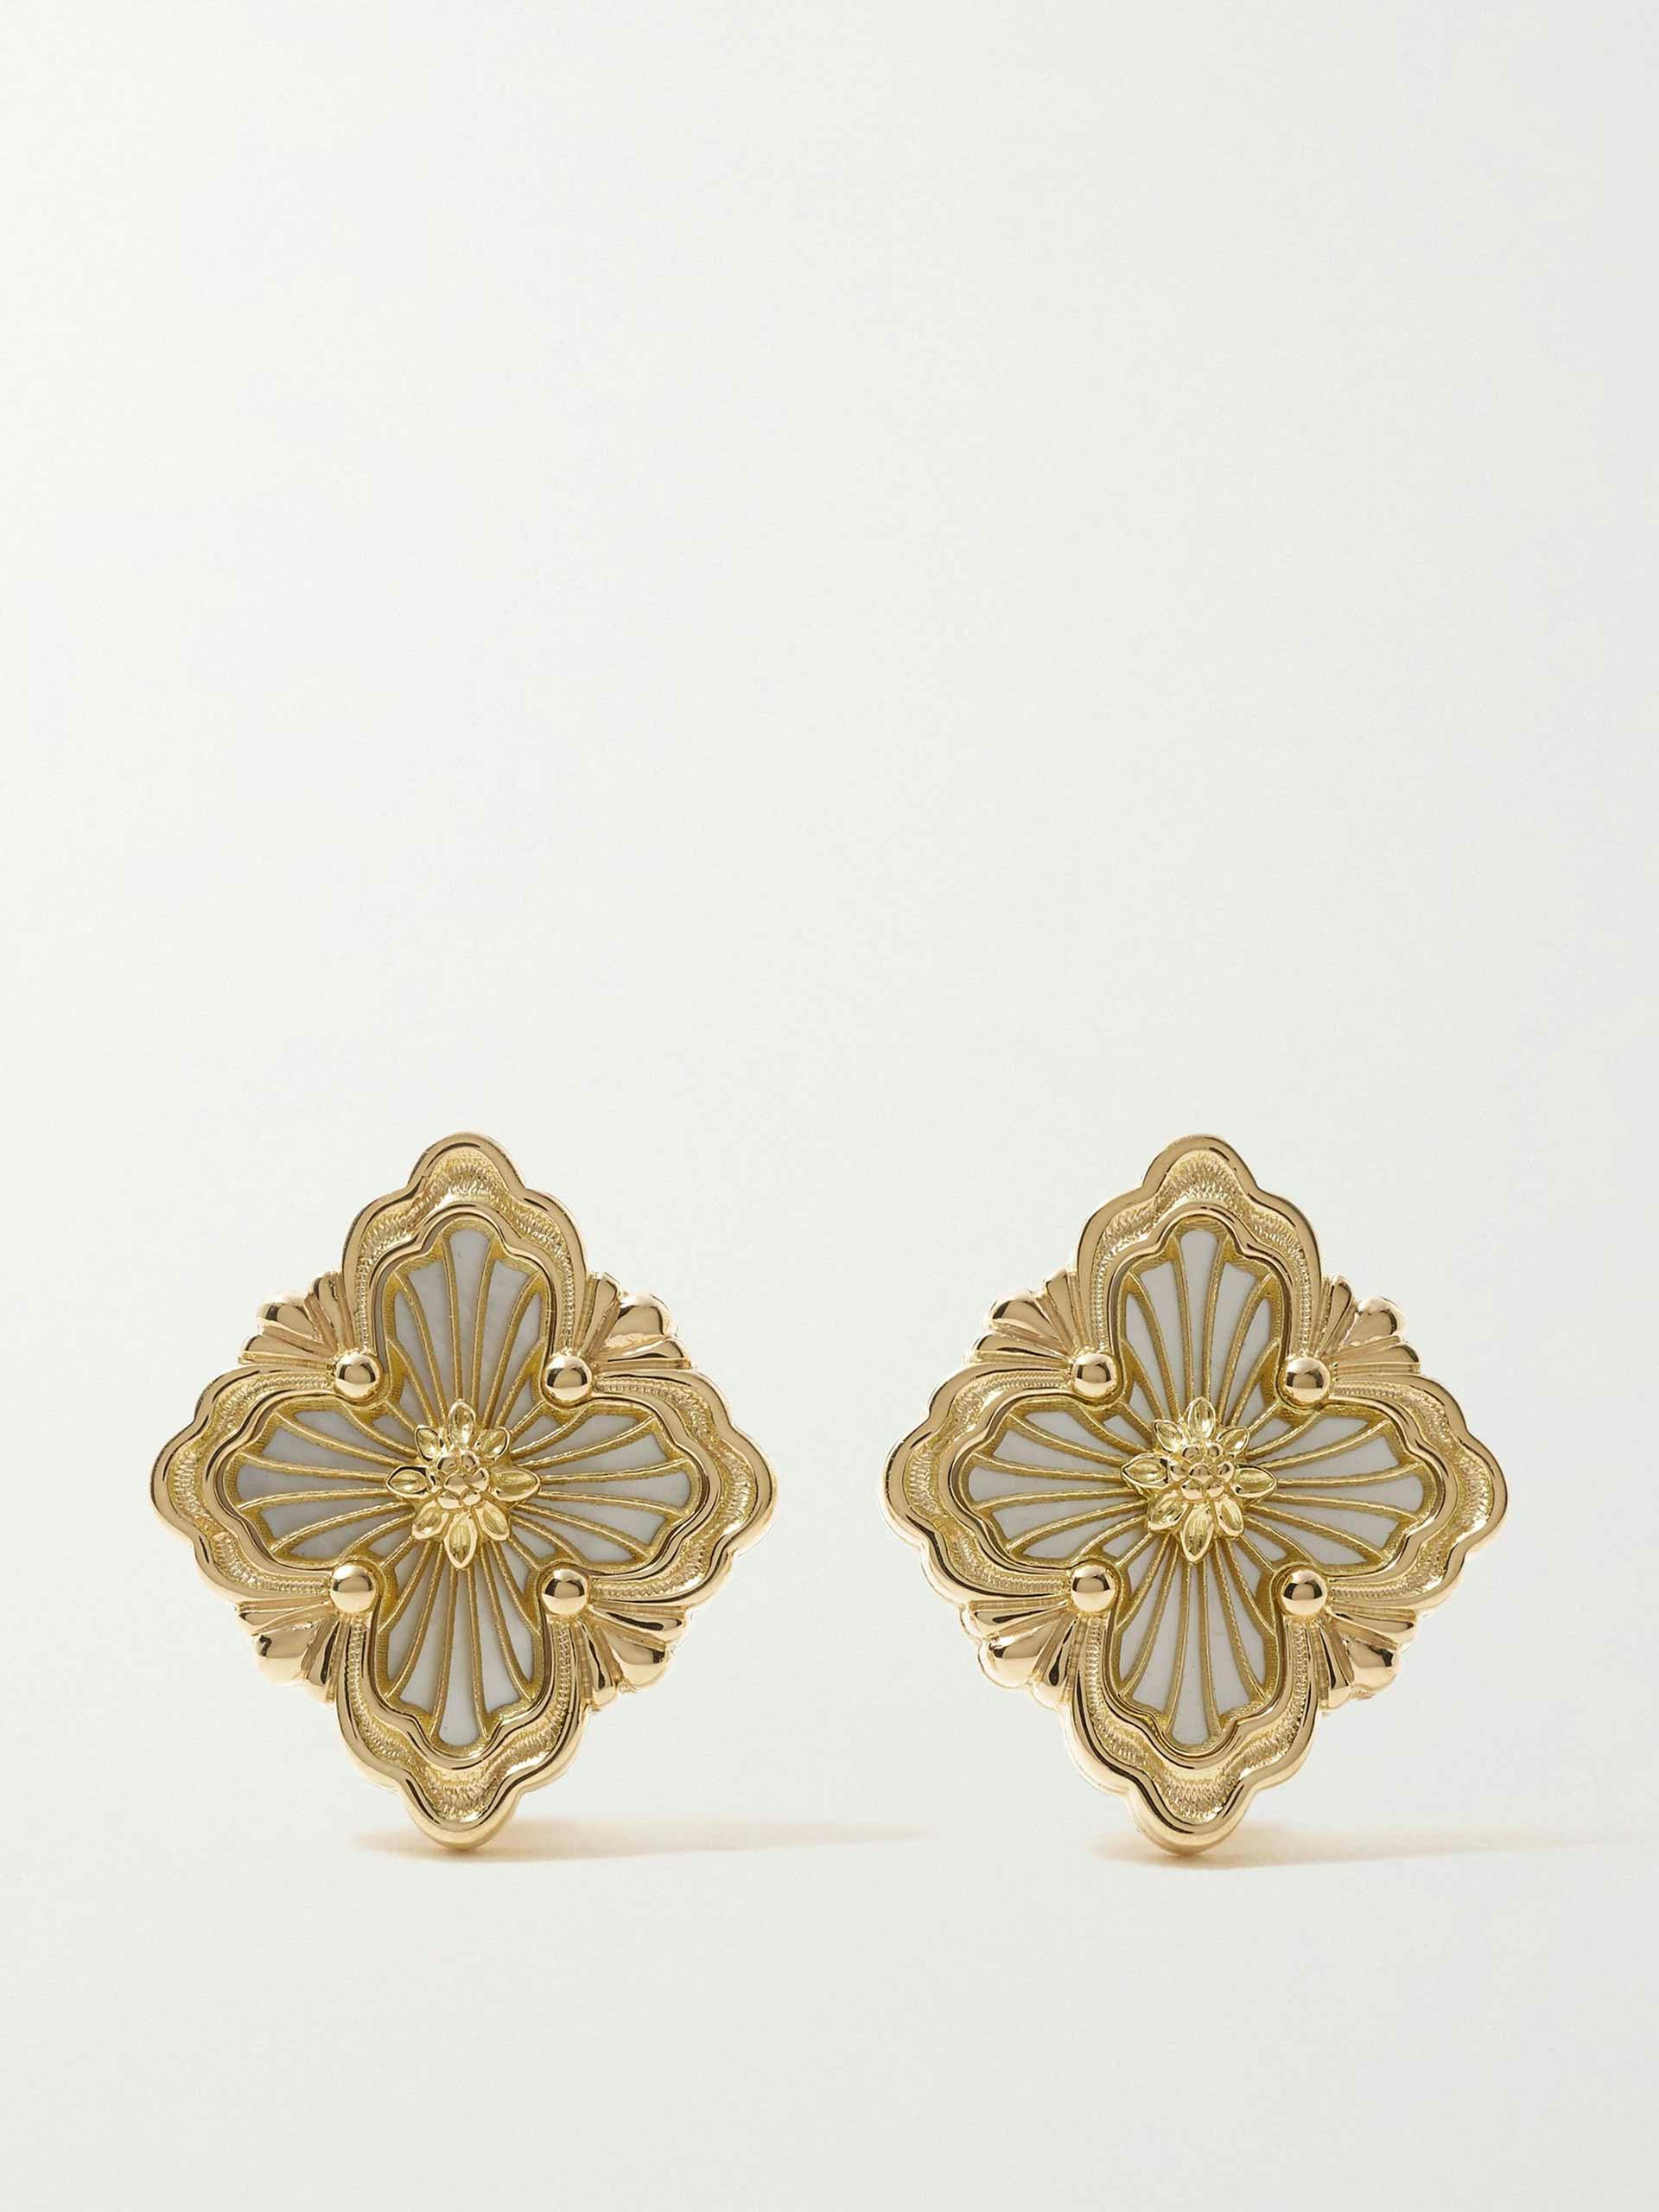 Gold opera earrings